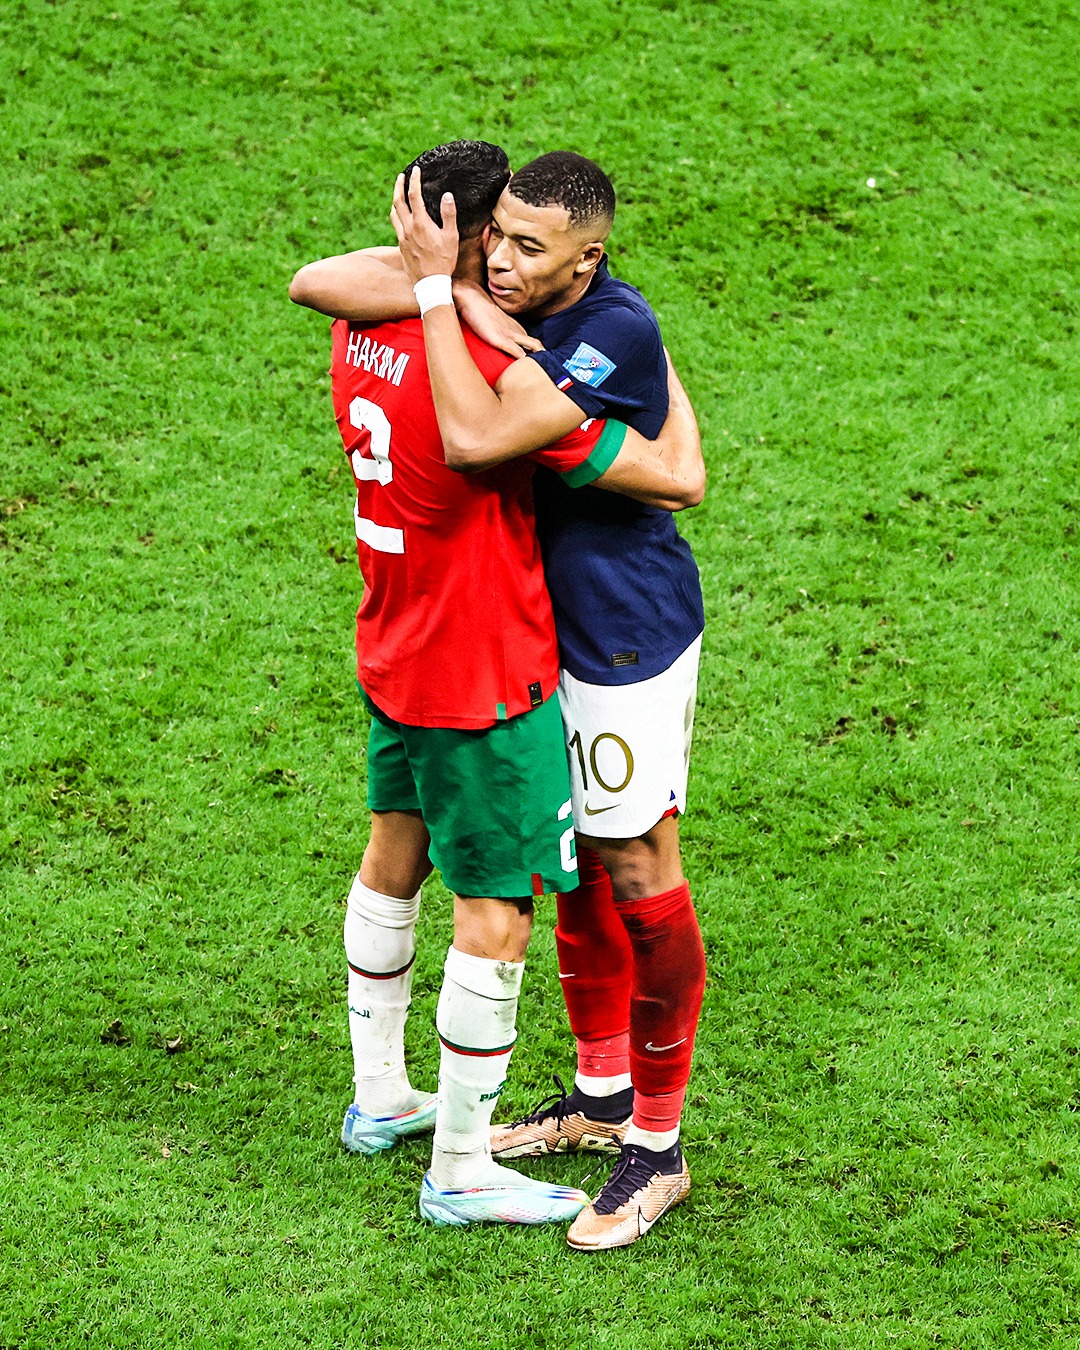 لقاء المغرب × فرنسا كامل في كأس العالم 2022 قطر بتعليق خليل البلوشي